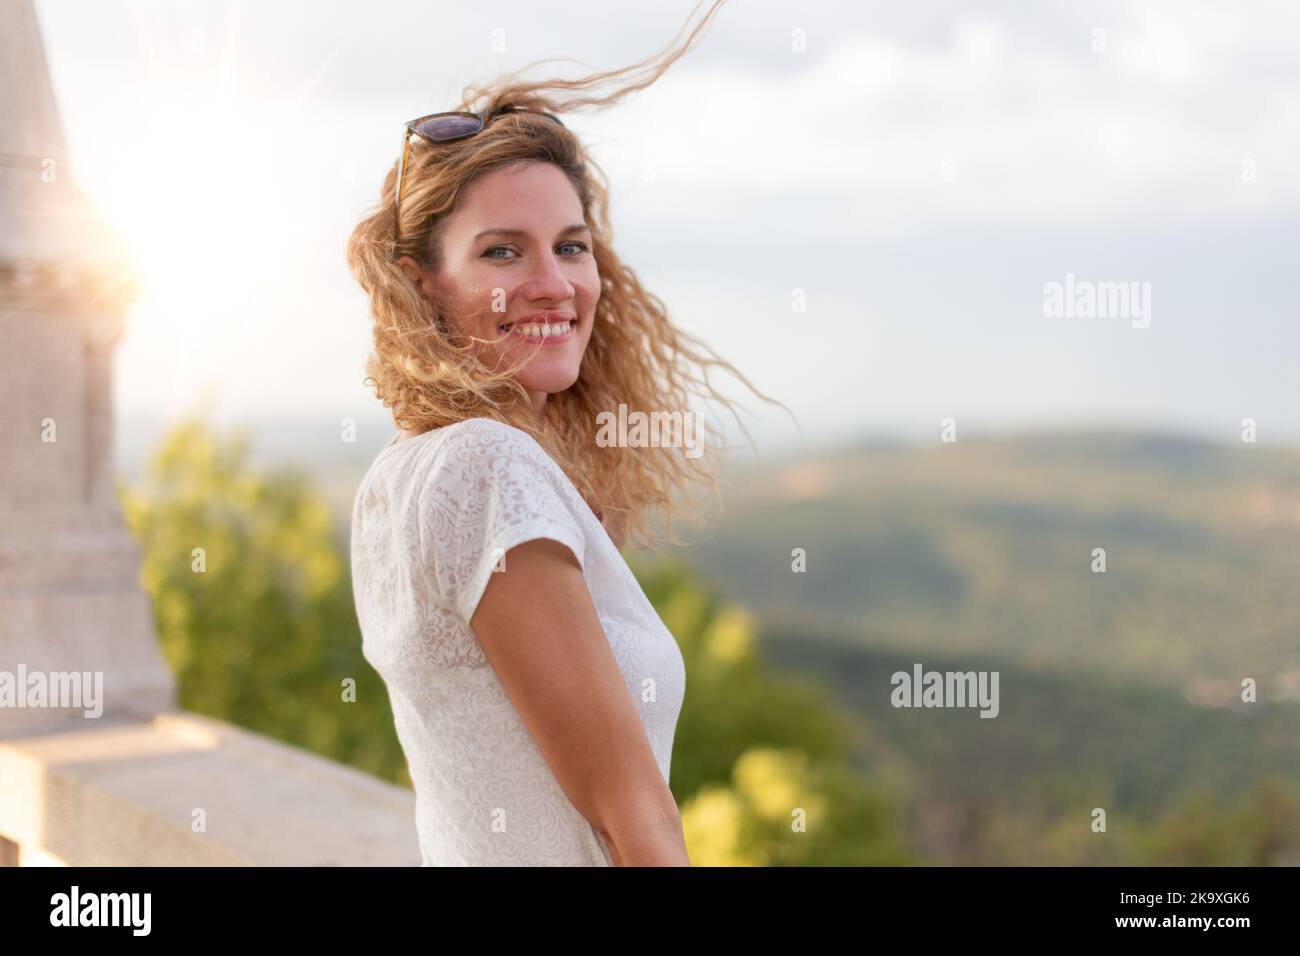 Glückliche junge kaukasische Frau mit lockigen Haaren, die bei Sonnenuntergang im Freien lächelt Stockfoto